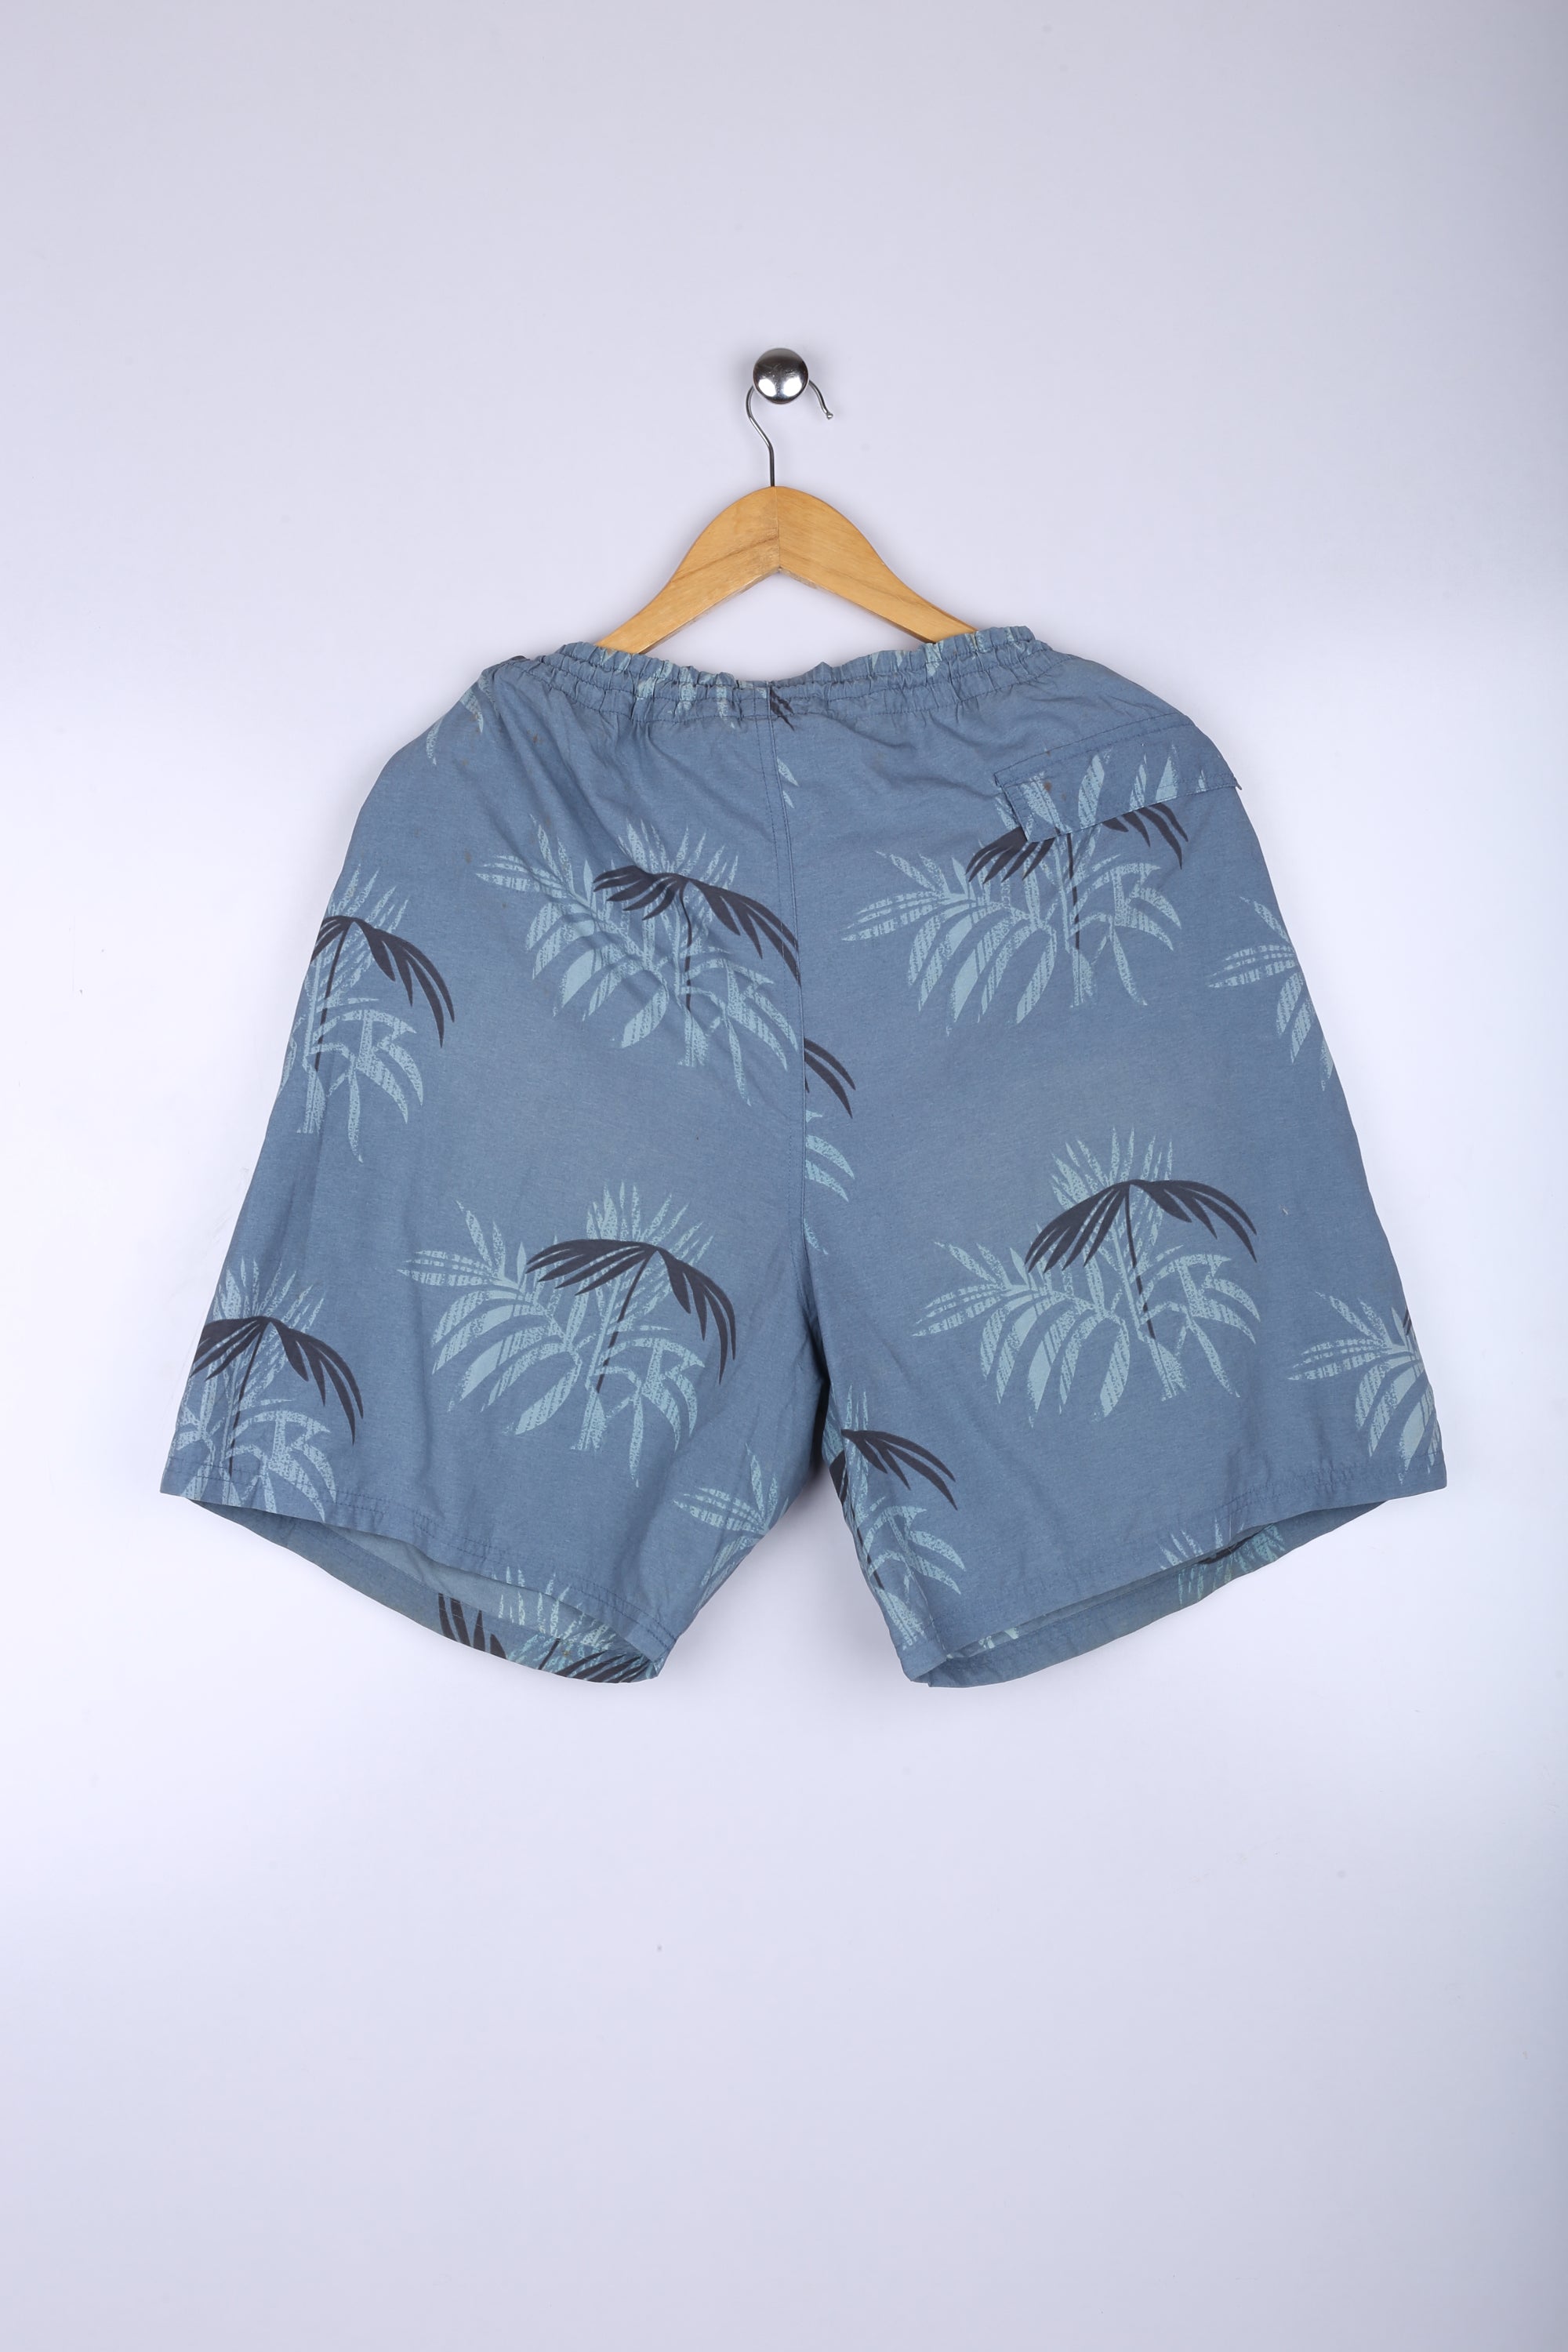 Vintage Hawaiin Shorts Blue